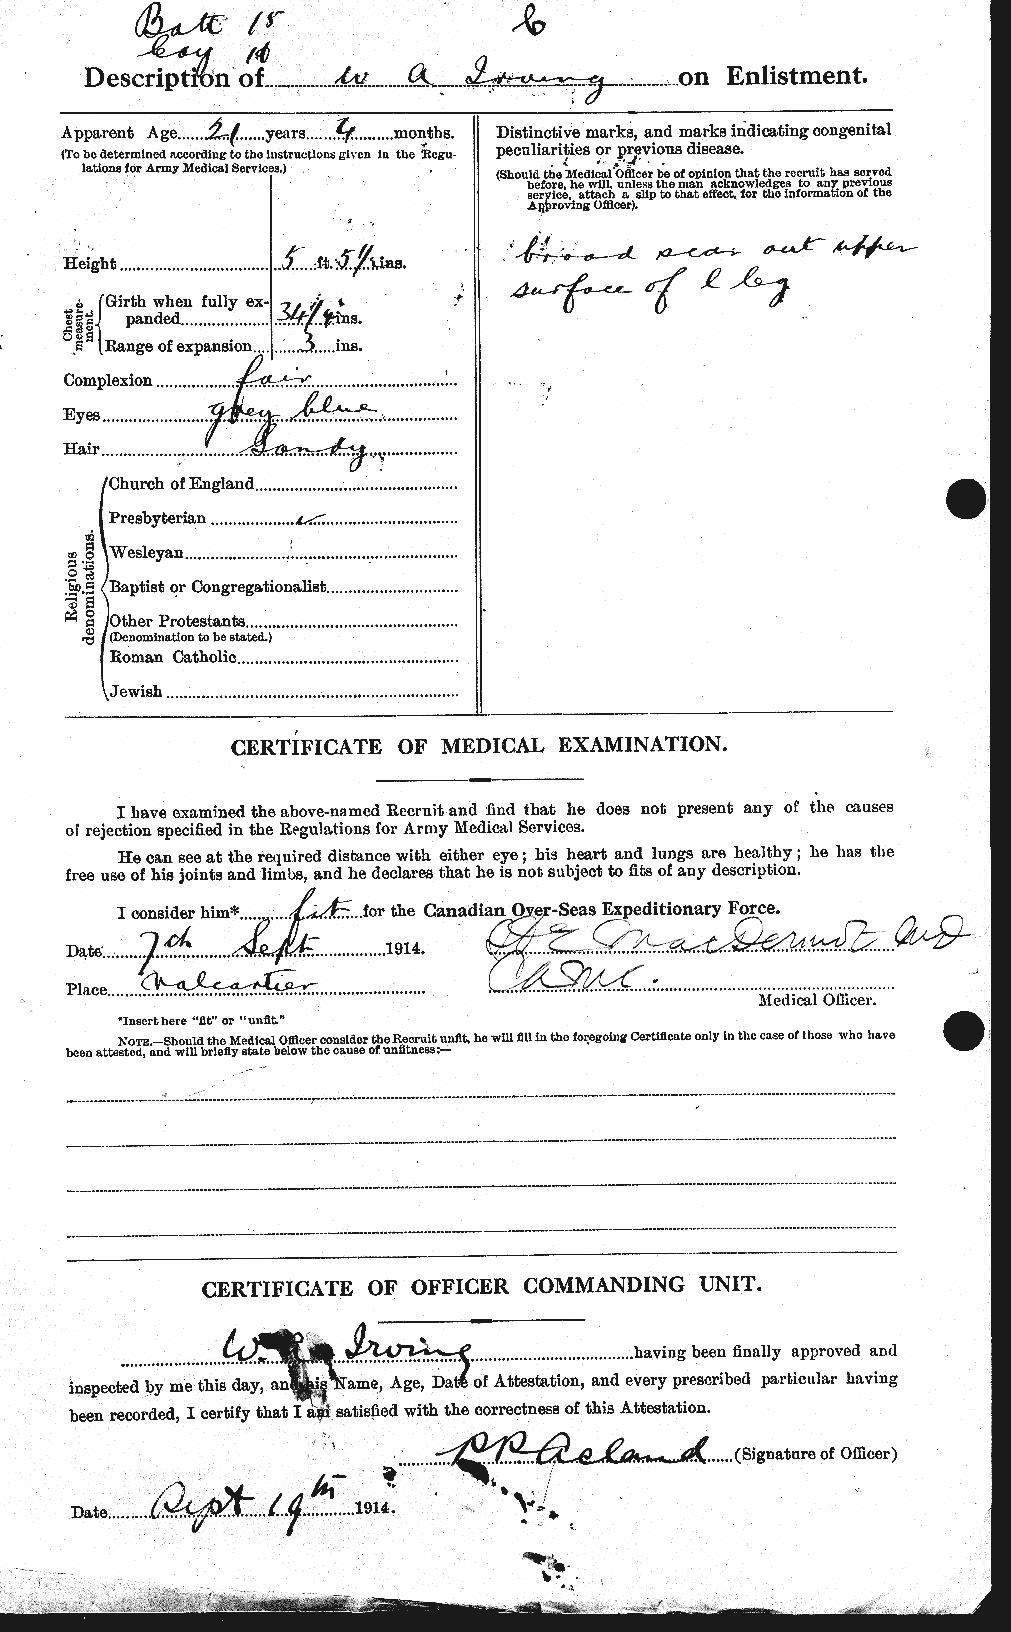 Dossiers du Personnel de la Première Guerre mondiale - CEC 412742b